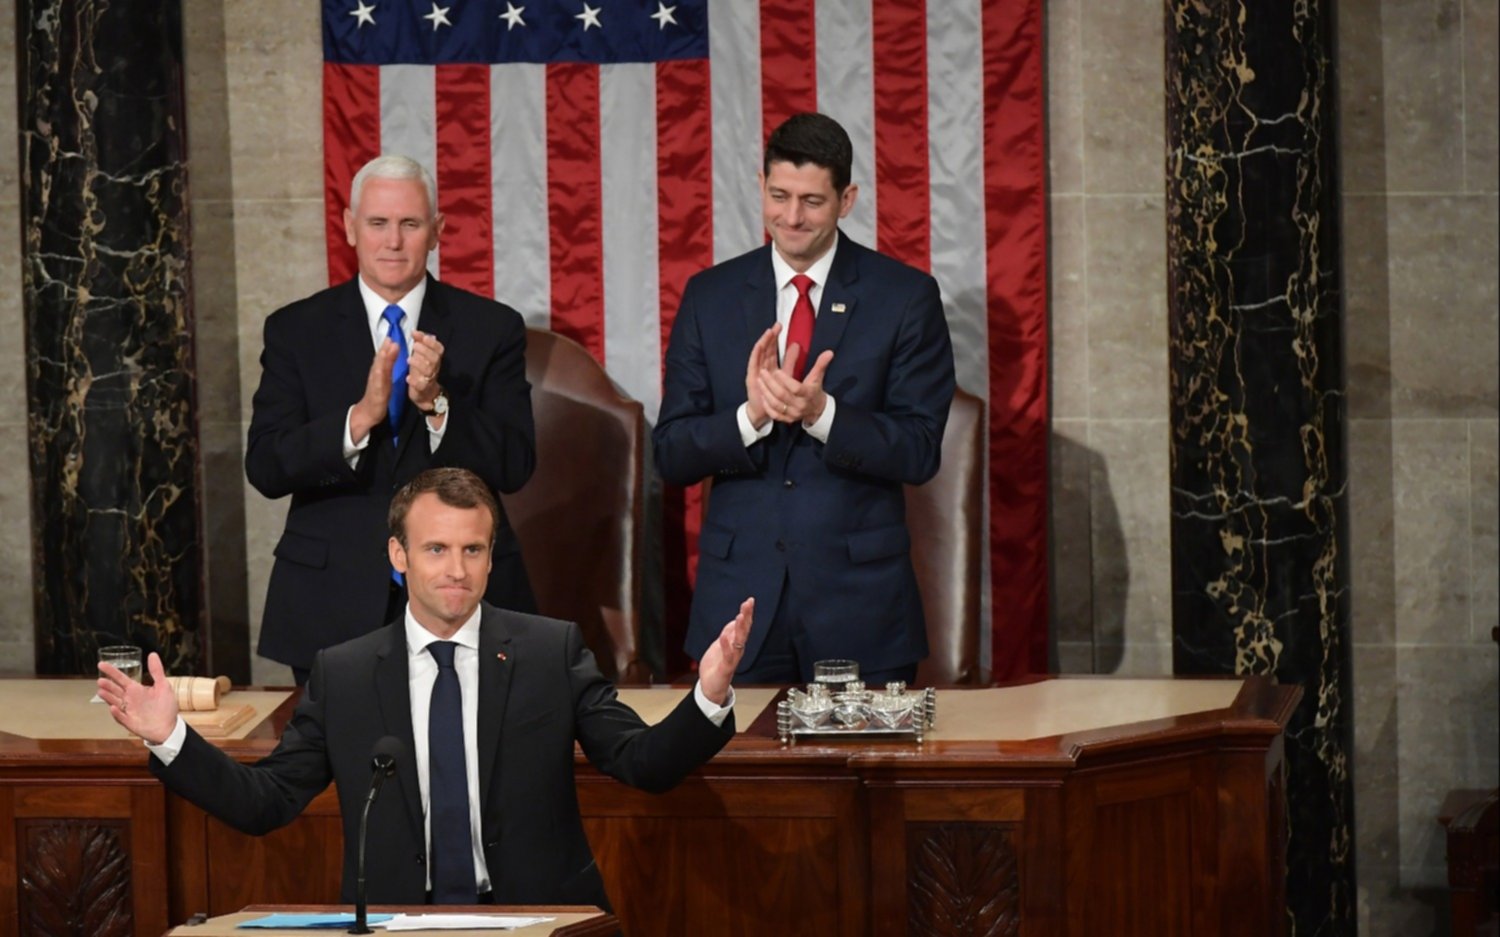 Macron, en su discurso en el Congreso de EE.UU, llamó a evitar el aislacionismo